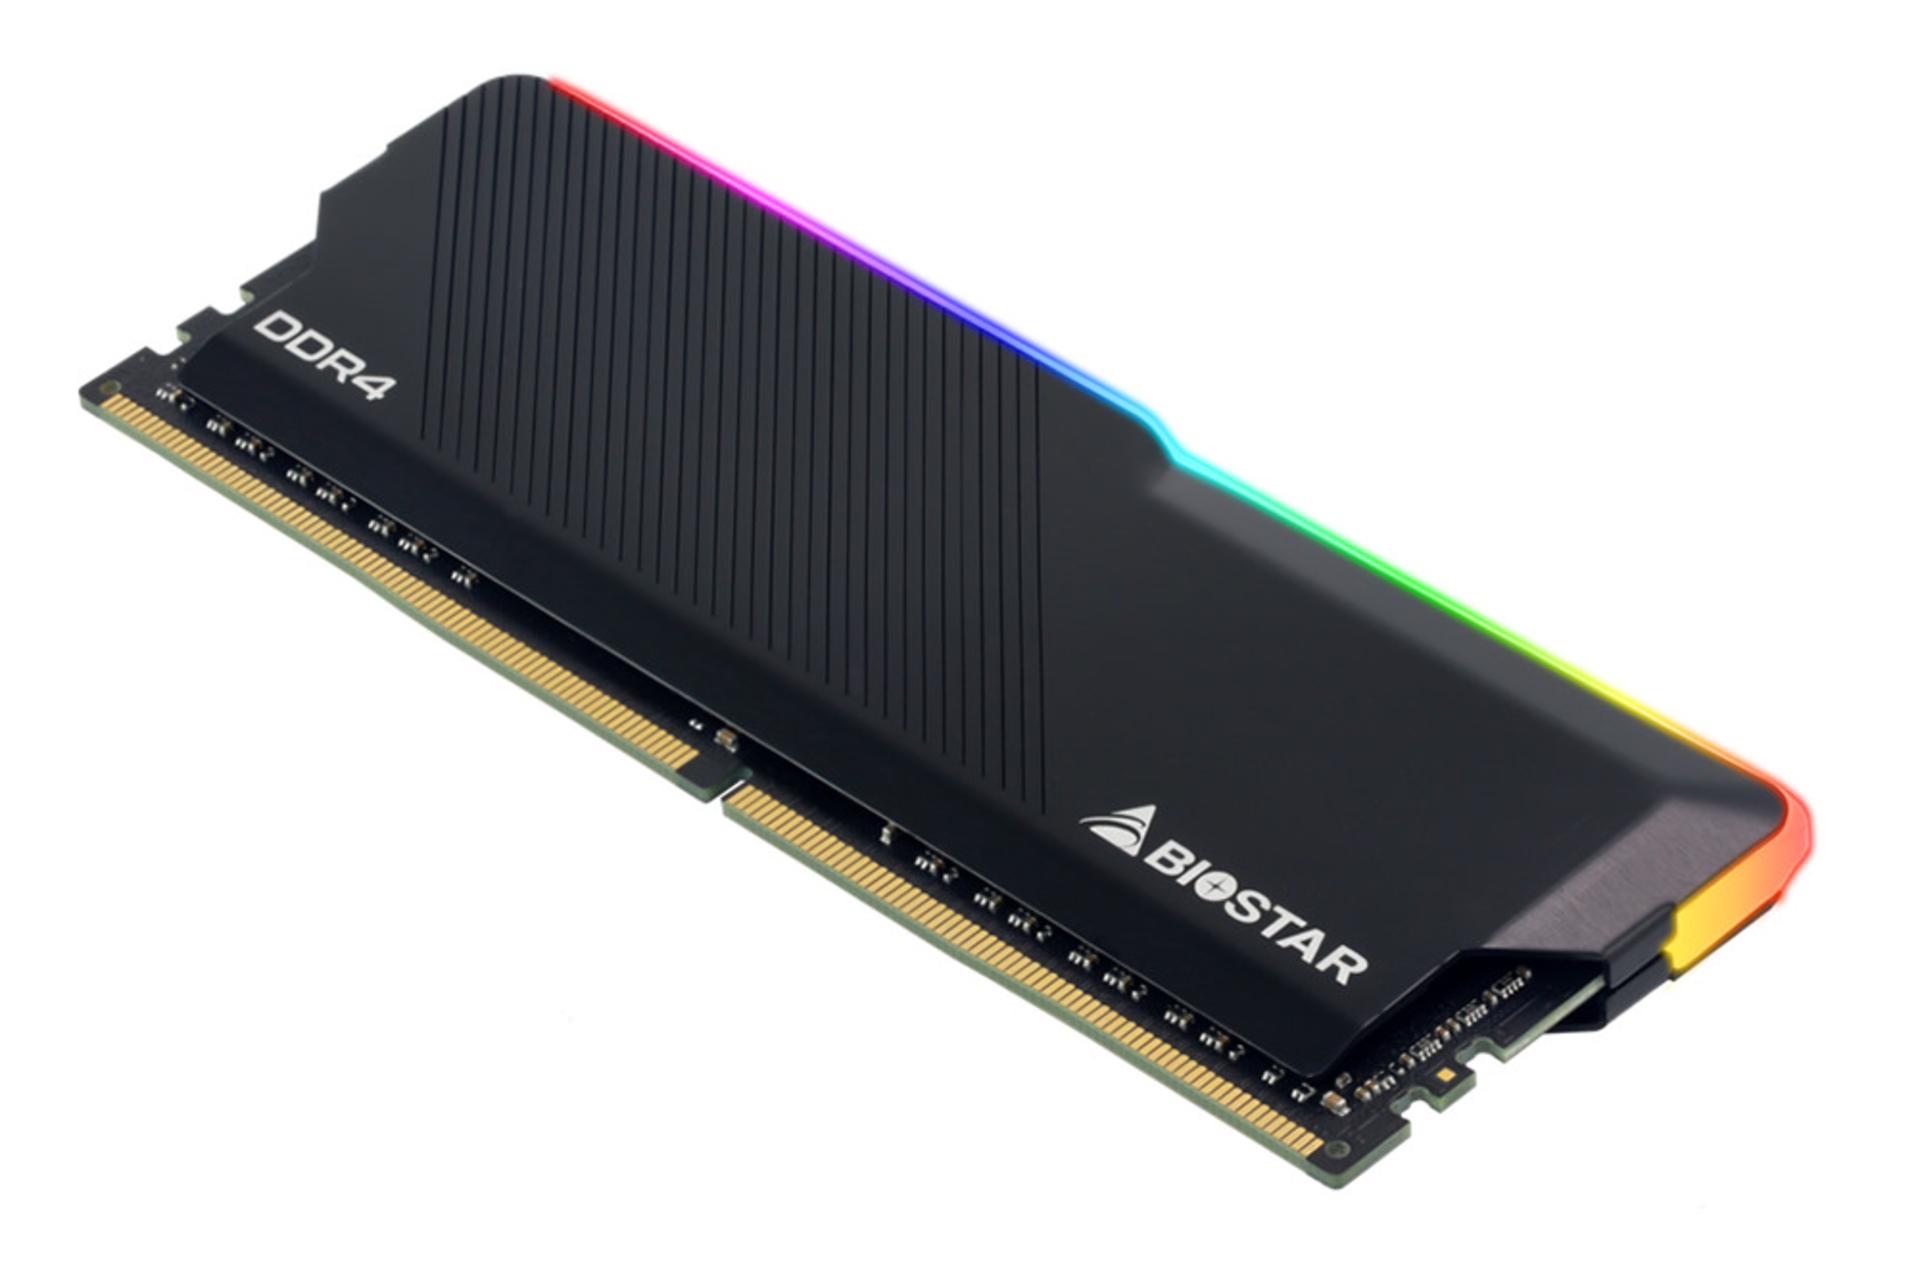  رم بایواستار GAMING X ظرفیت 16 گیگابایت (2x8) از نوع DDR4-3200 نمای جانبی پایین